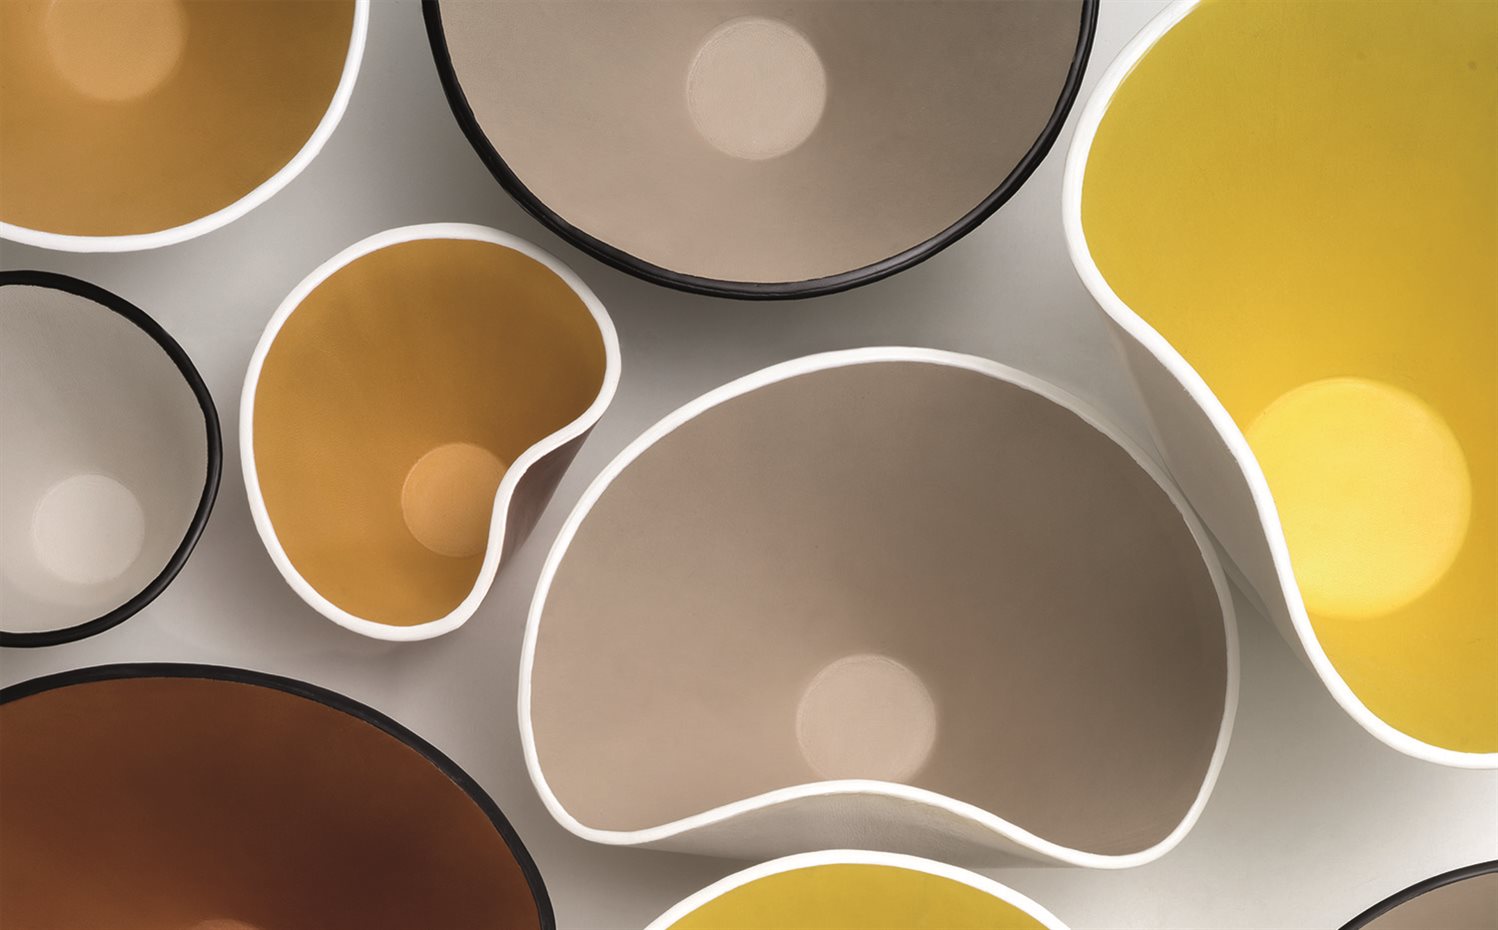 Colección de recipientes Bowls, presentada en el Salón de Milán 2015